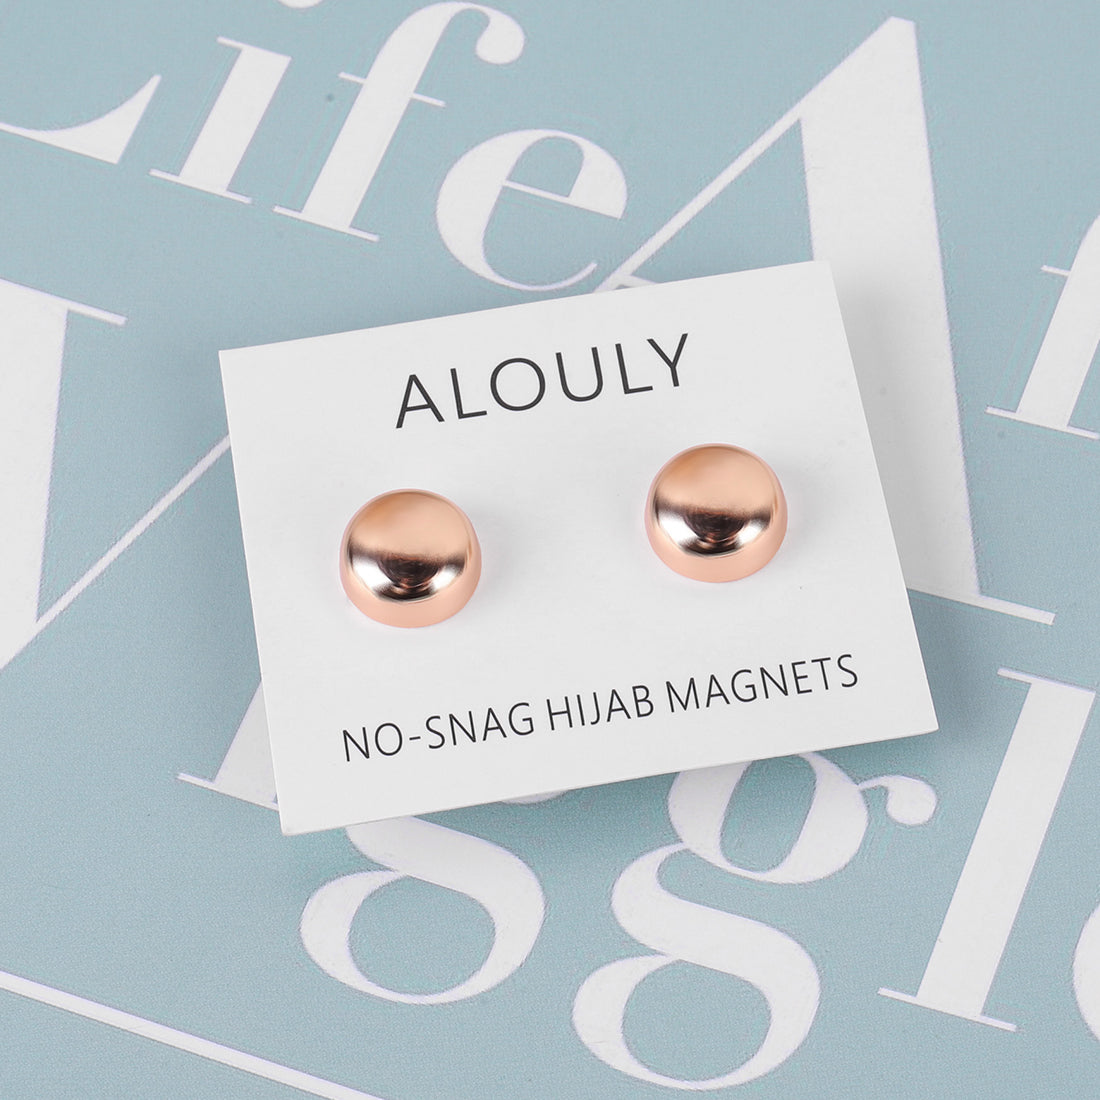 Hijab magnet pins